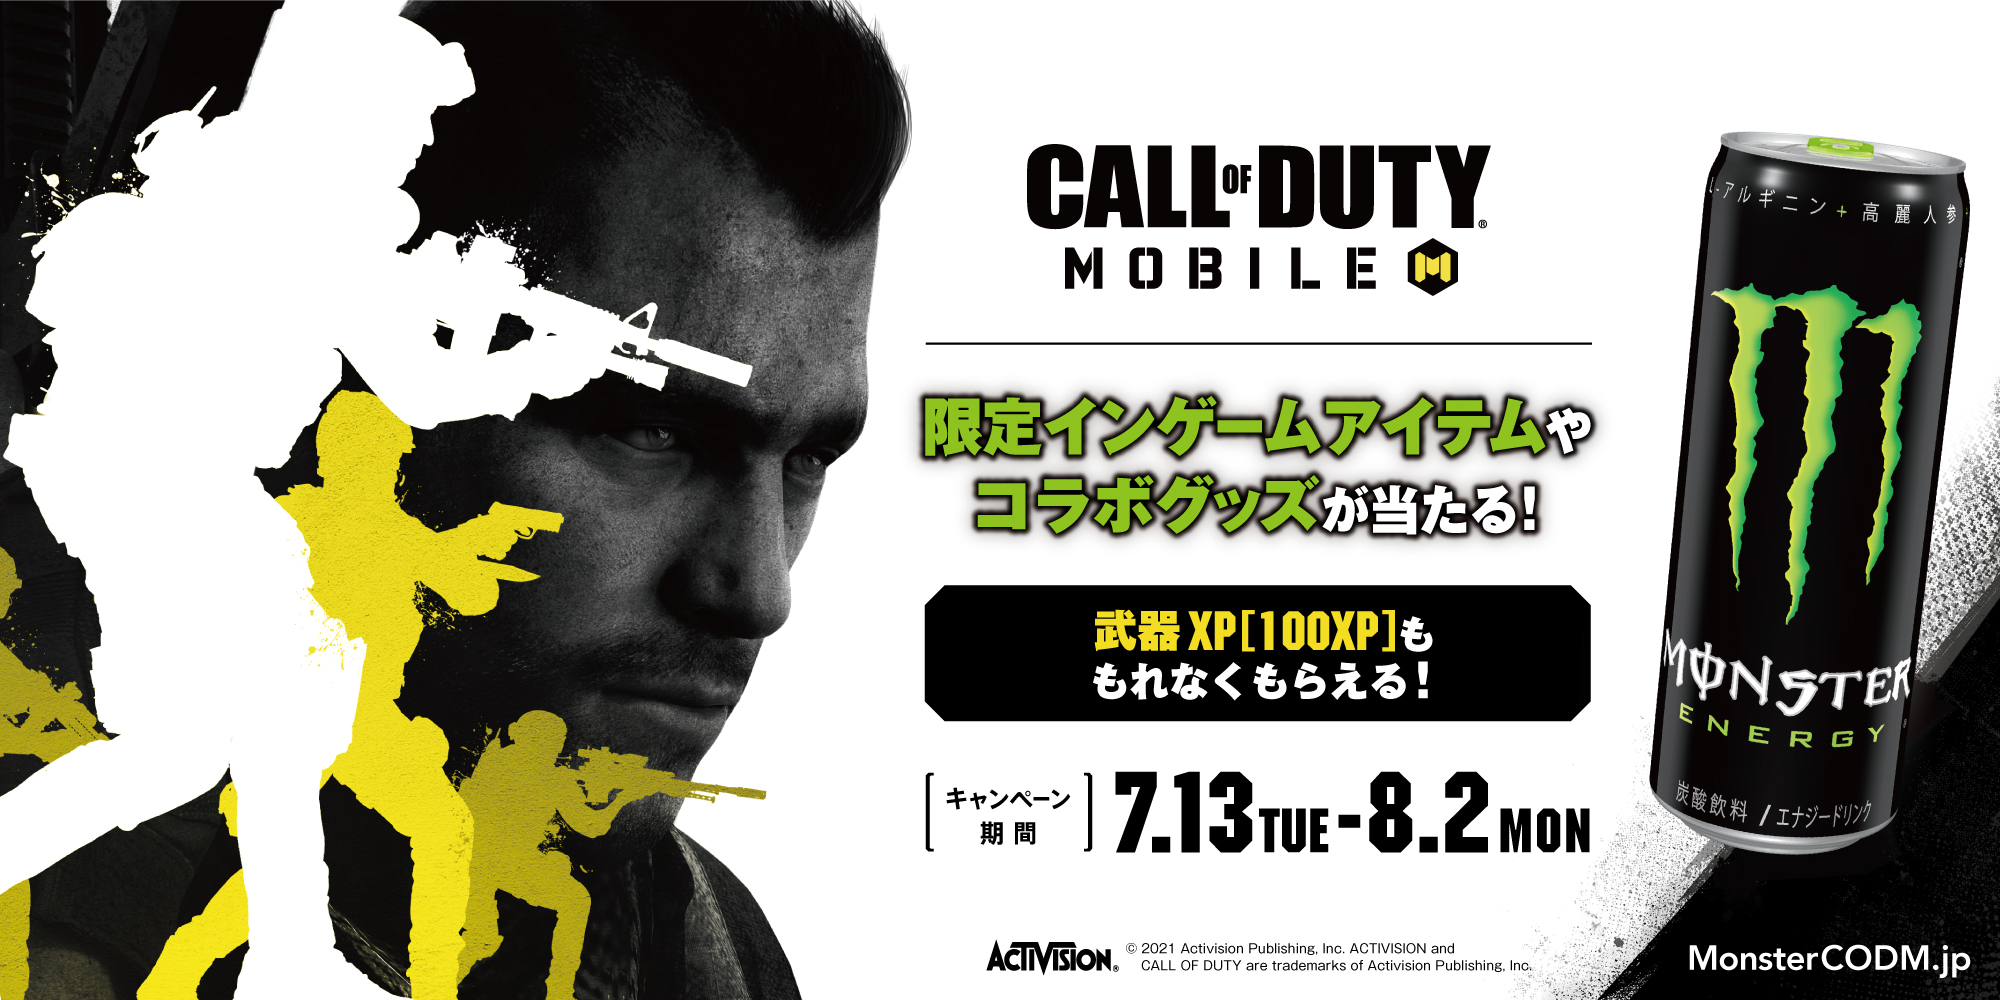 ファミリーマート限定 モンスターエナジー Call Of Duty Mobile コラボキャンペーン開催 モンスターエナジー ジャパン合同会社のプレスリリース